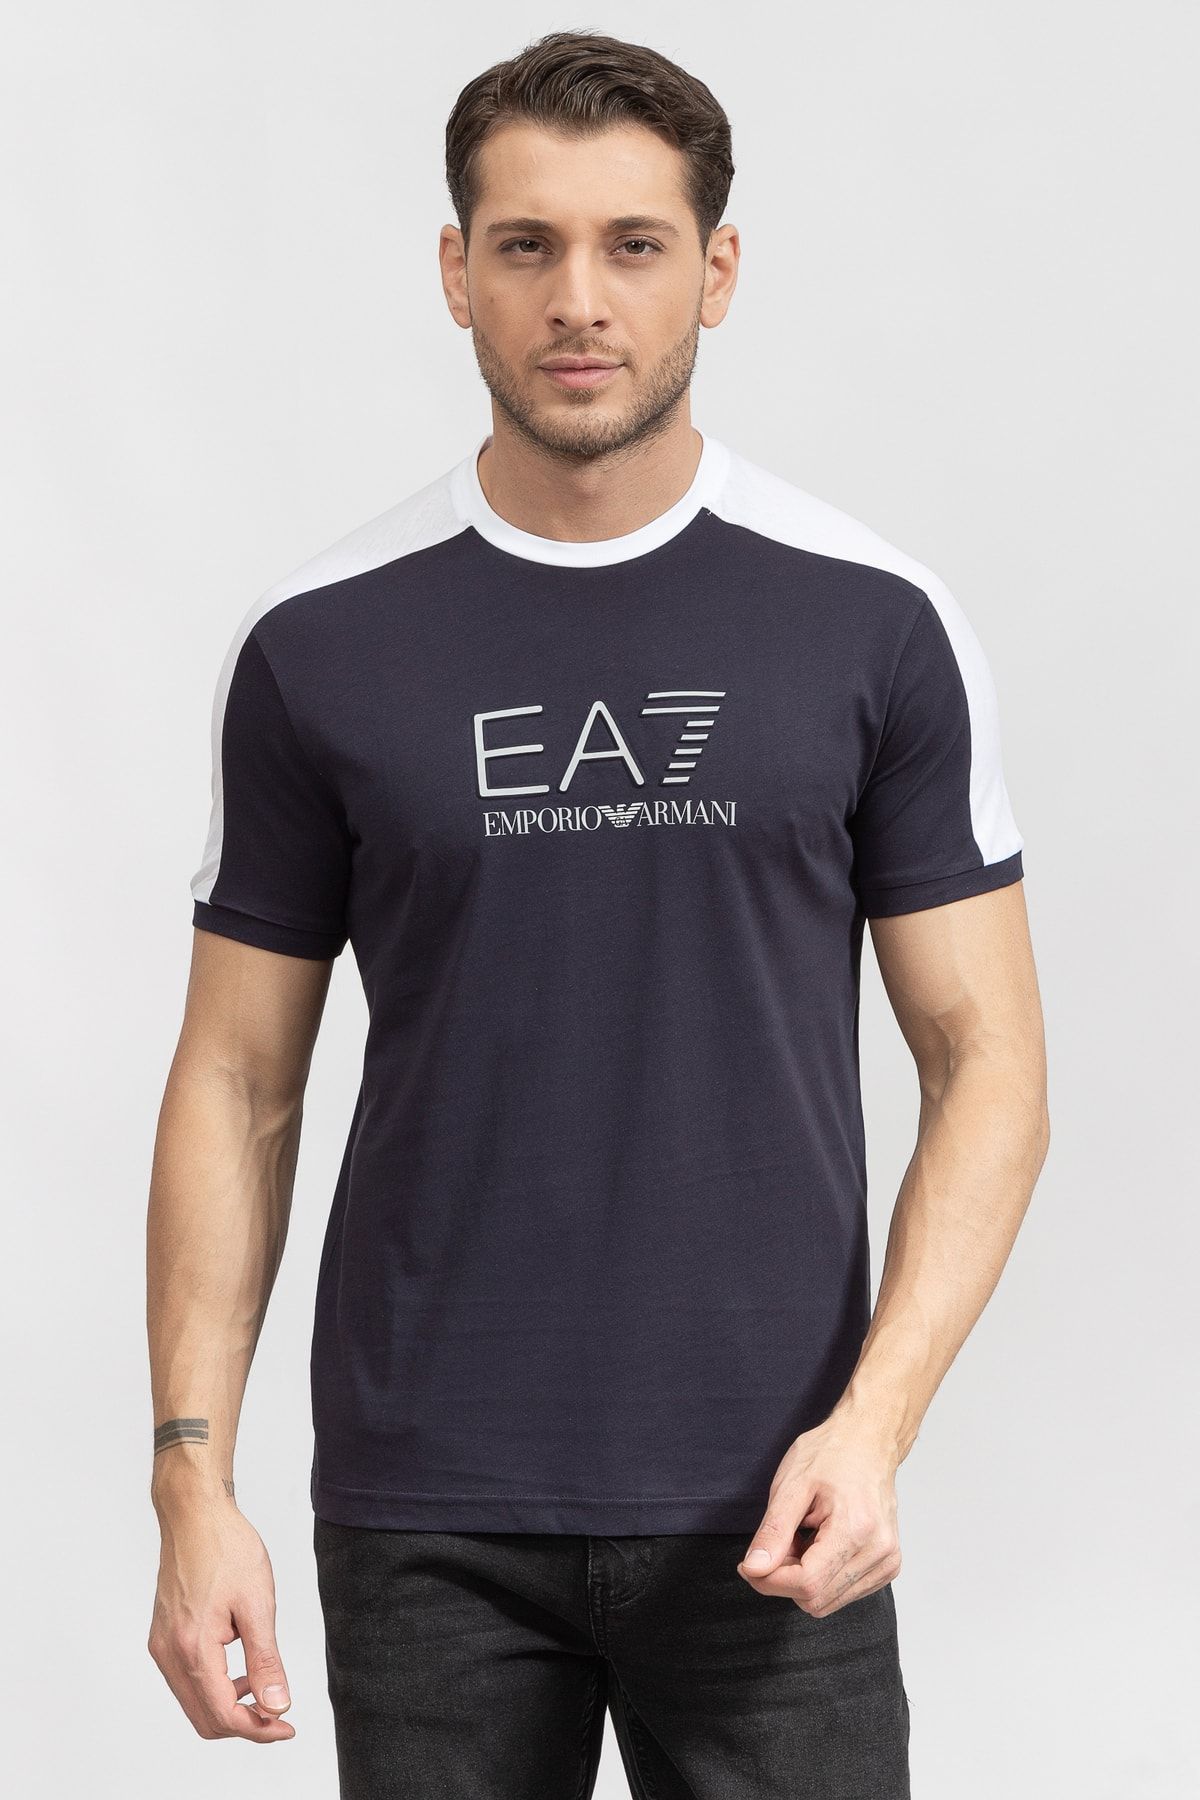 EA7 Erkek Bisiklet Yaka T-shirt6lpt06pj02z